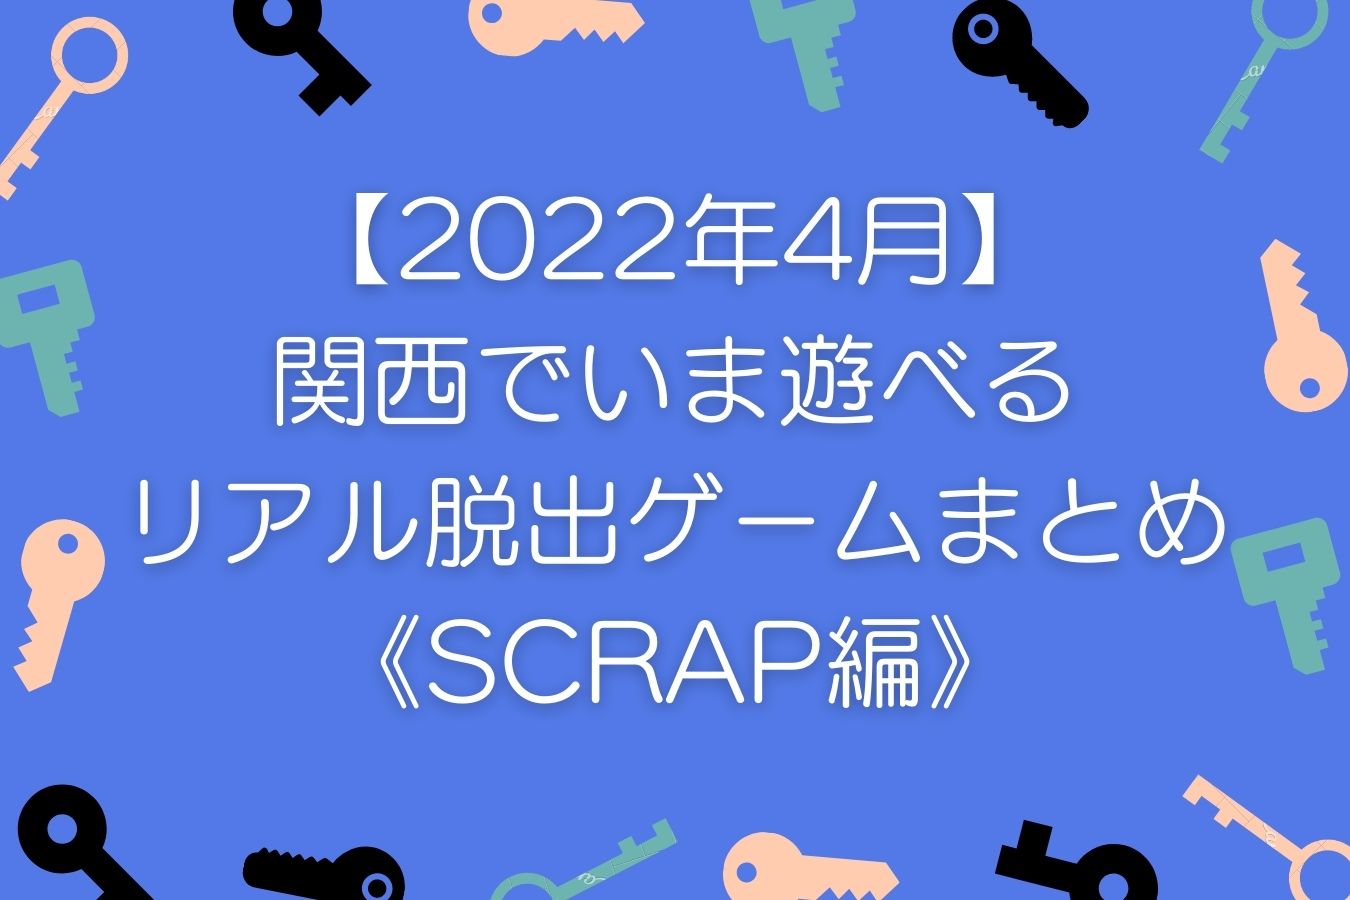 【2022年4月】関西でいま遊べるリアル脱出ゲームまとめ《SCRAP編》